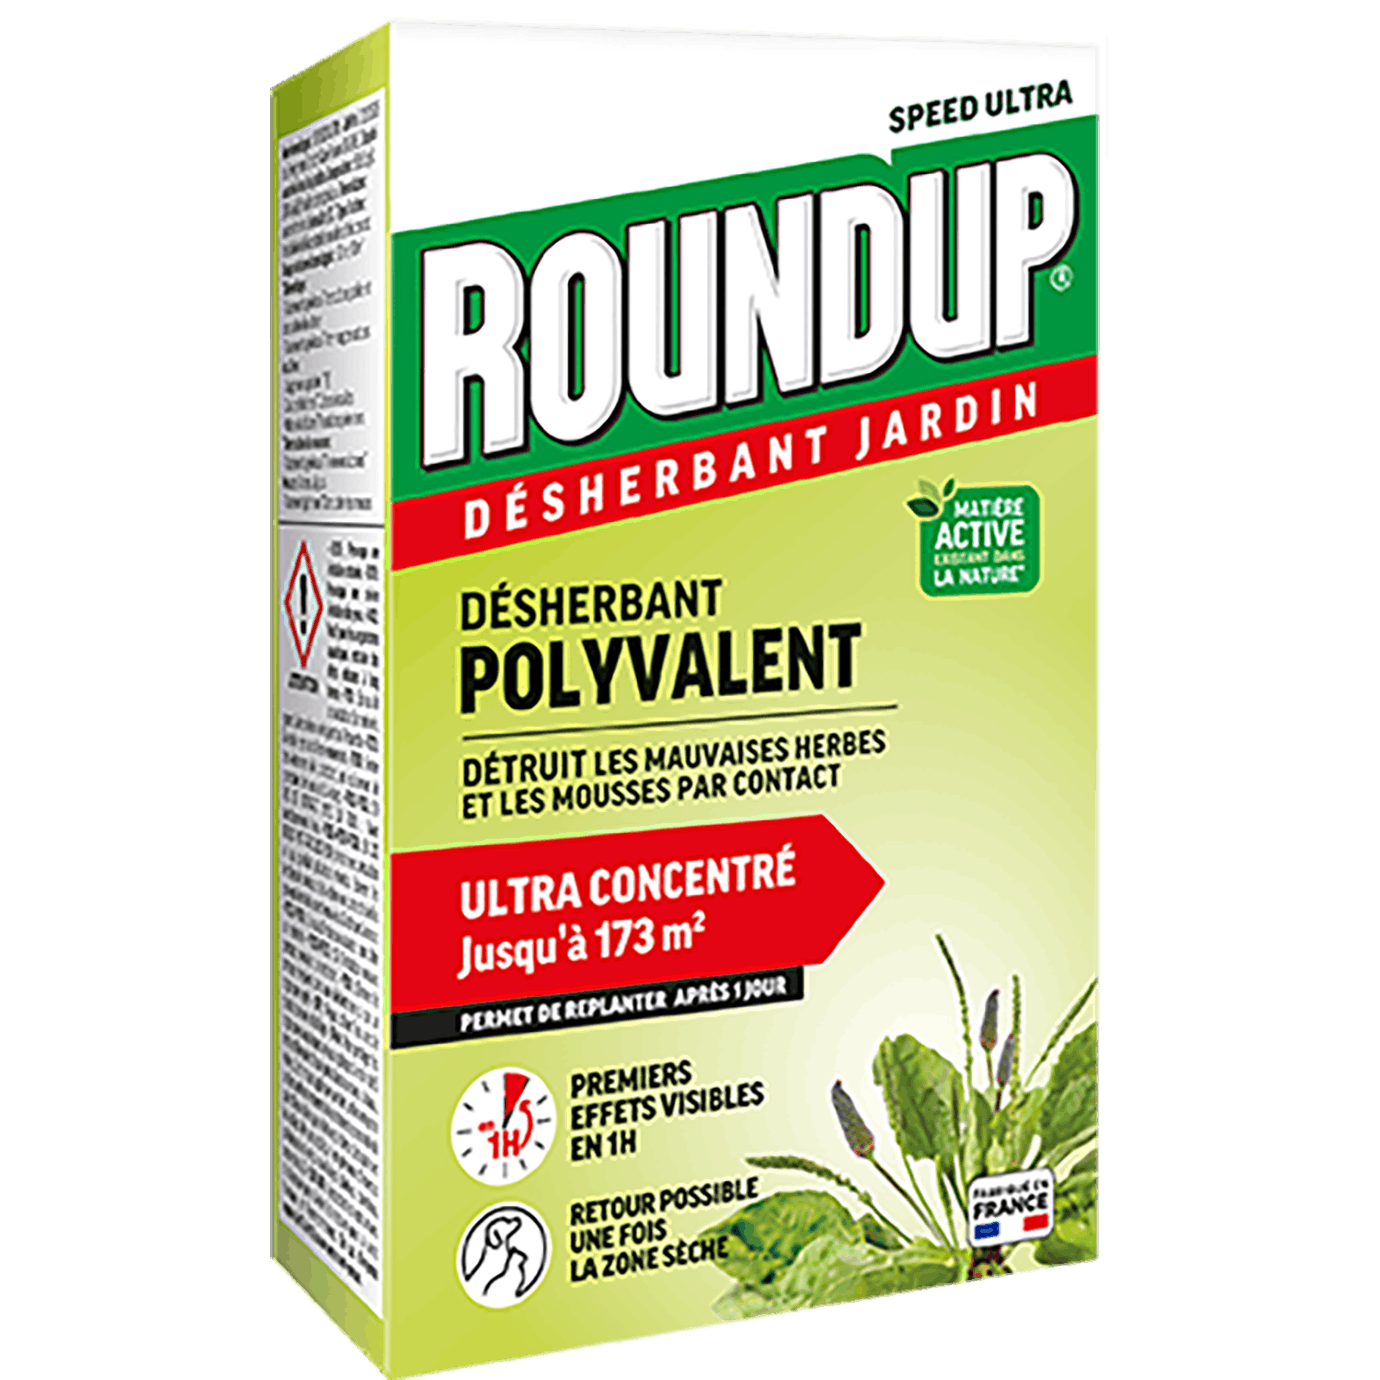 EVERGREEN GARDEN CARE FRANCE : En 2022, ROUNDUP® offre la gamme la plus  large du marché avec ses désherbants biocontrôles polyvalents